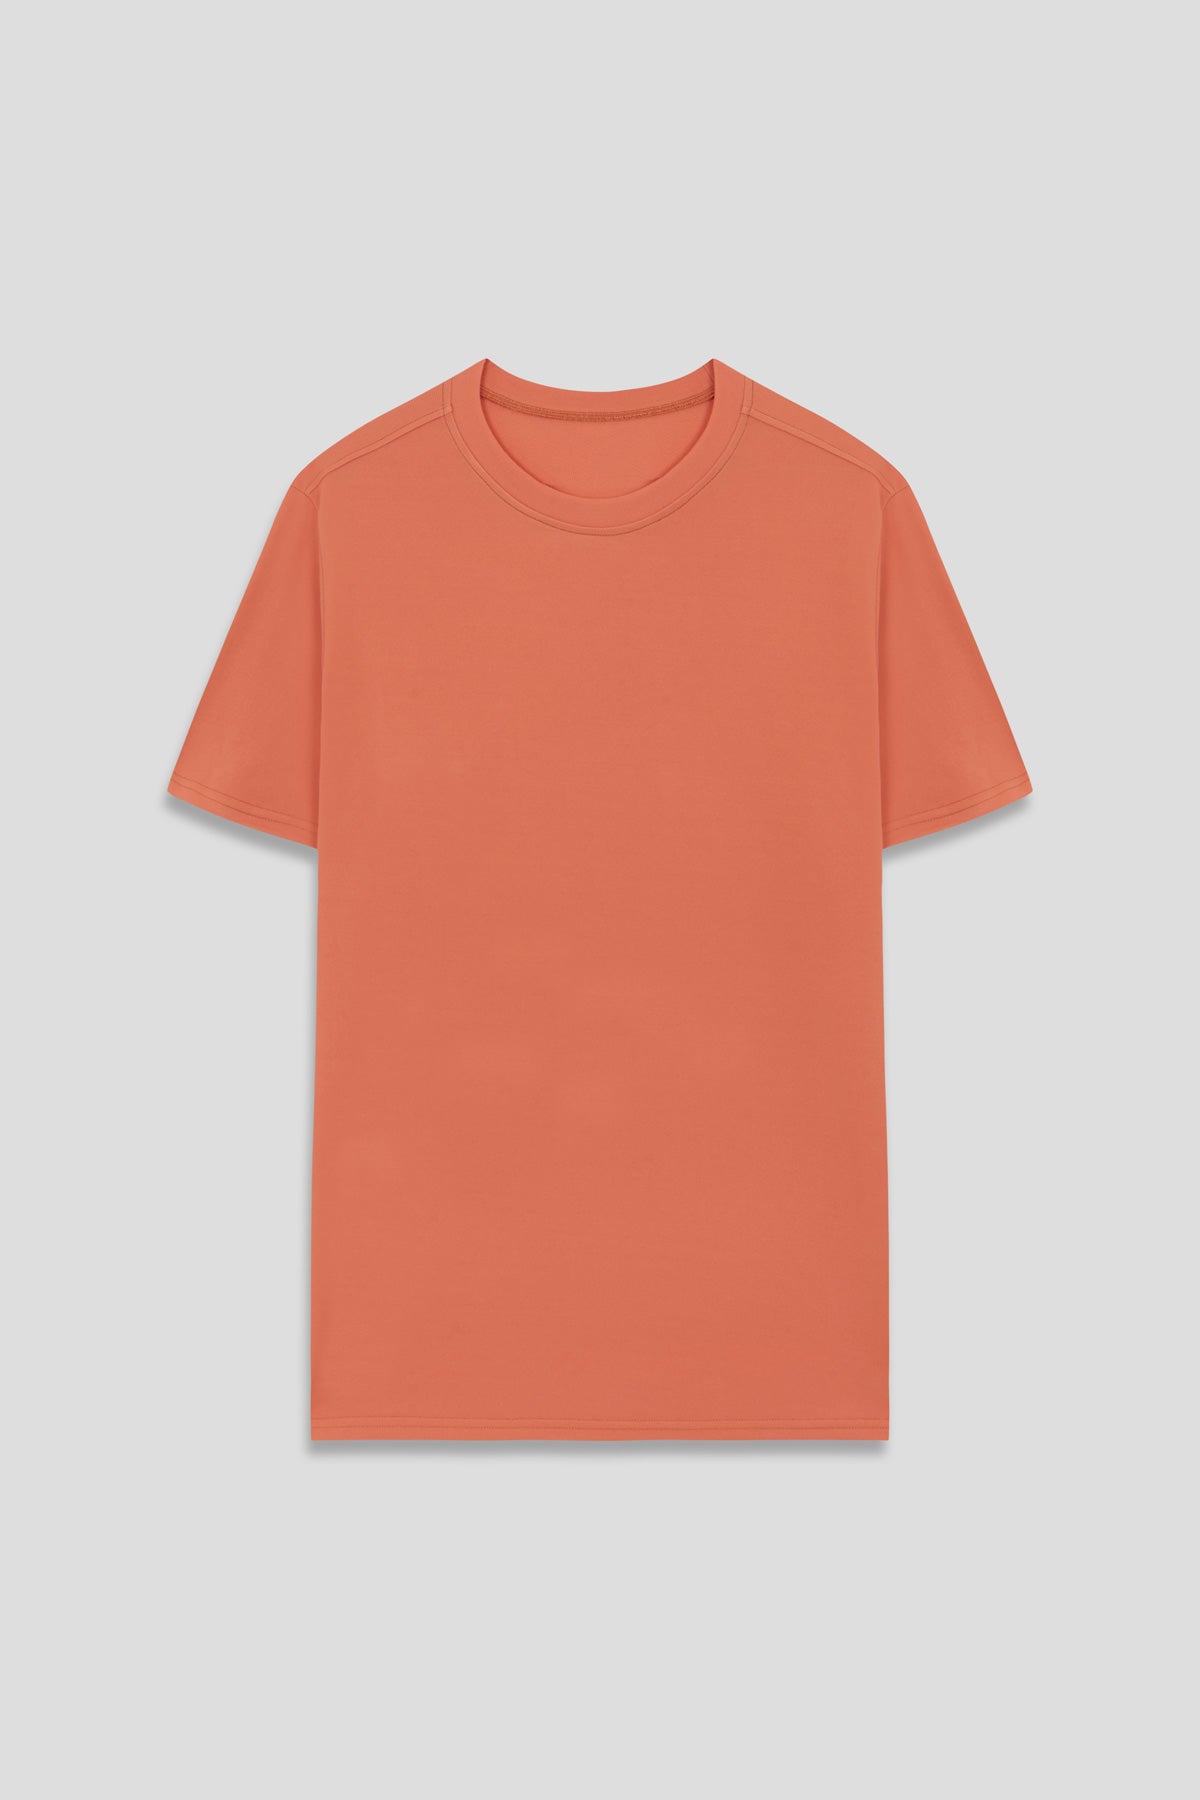 Camiseta hombre naranja cometa - Sepiia